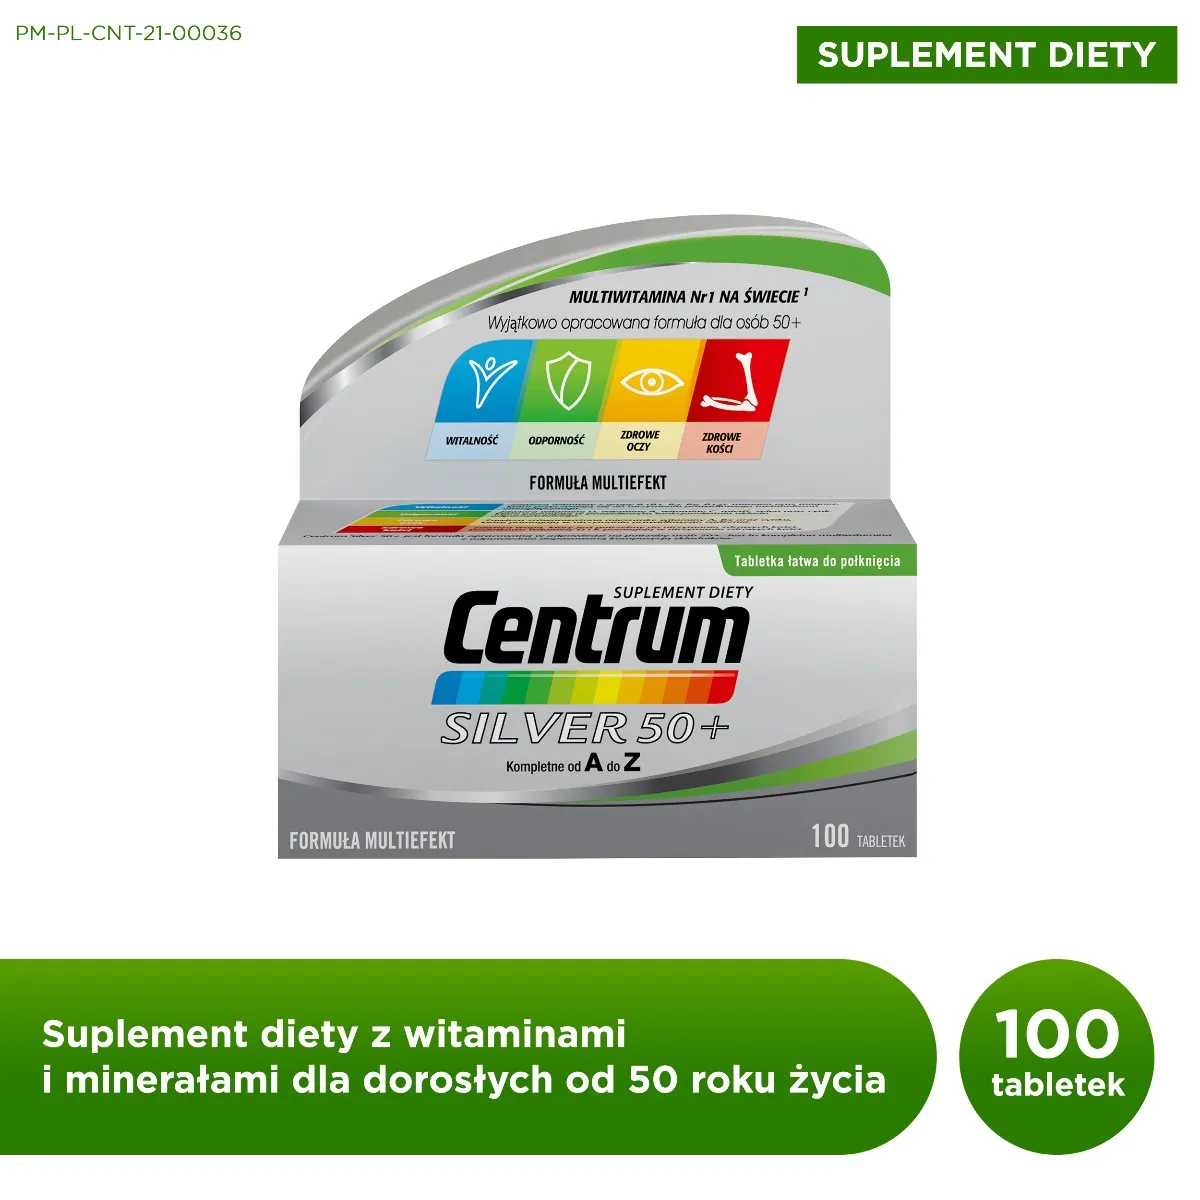 Centrum Silver 50+, suplement diety, 100 tabletek